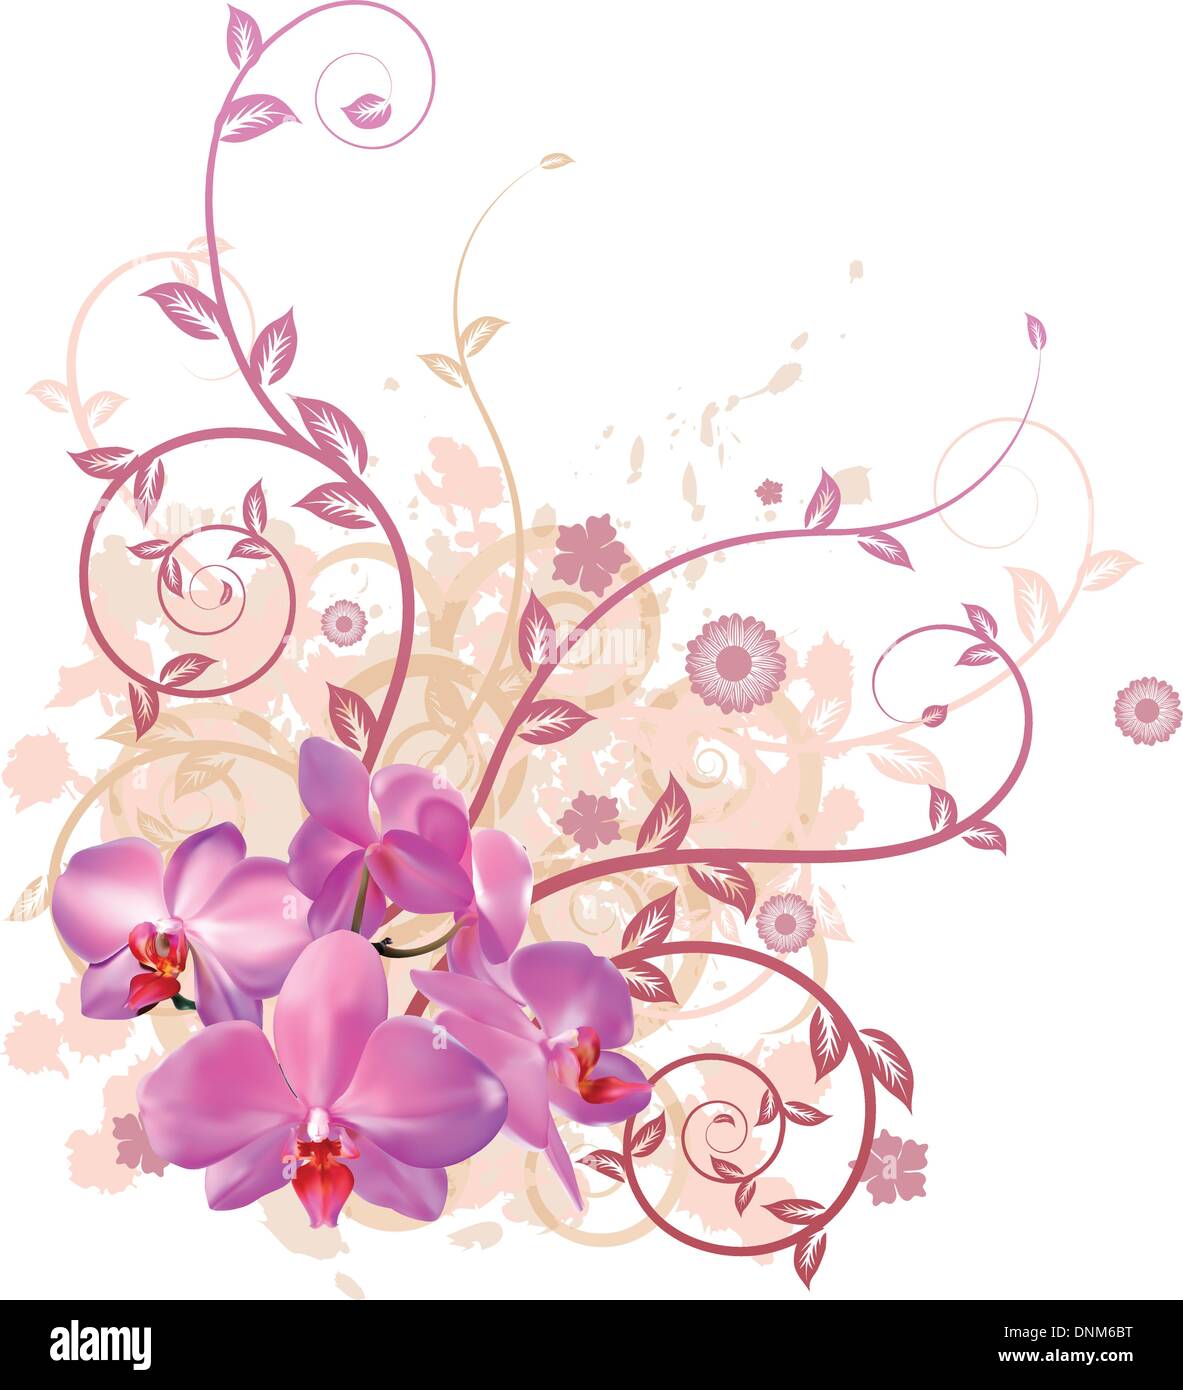 Eine sehr stilvolle Blumenkarte Vektorgrafik mit rosa Orchidee blüht. Stock Vektor